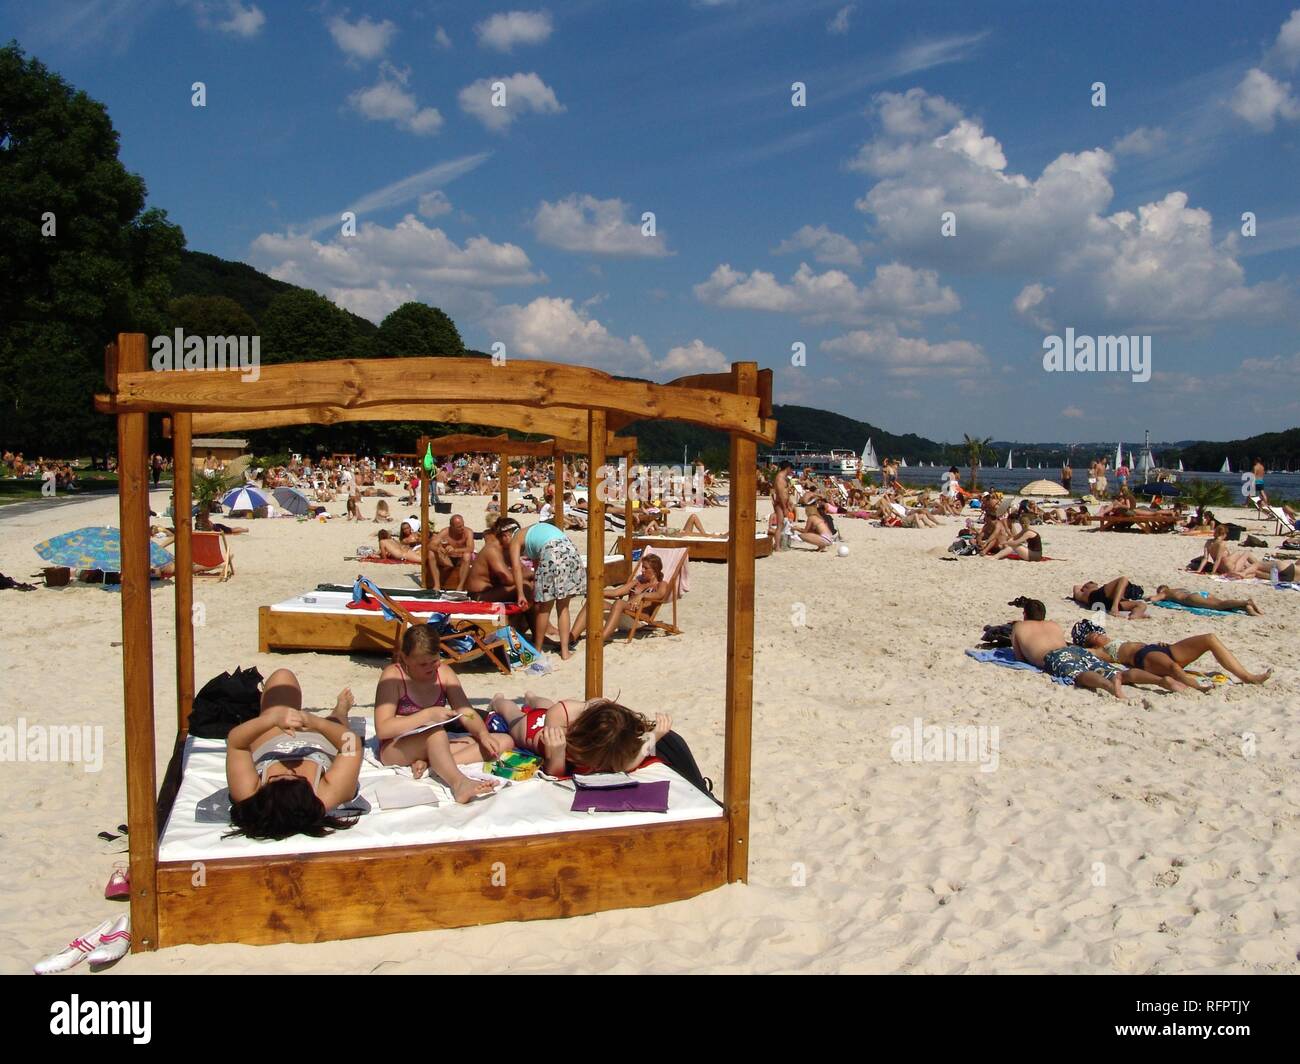 DEU, Allemagne, Essen : le lac Baldeneysee, rivière Ruhr. Plage de sable artificielle pour la réfrigération et l'amusement à la rive de la Ruhr. Seaside Beach Banque D'Images